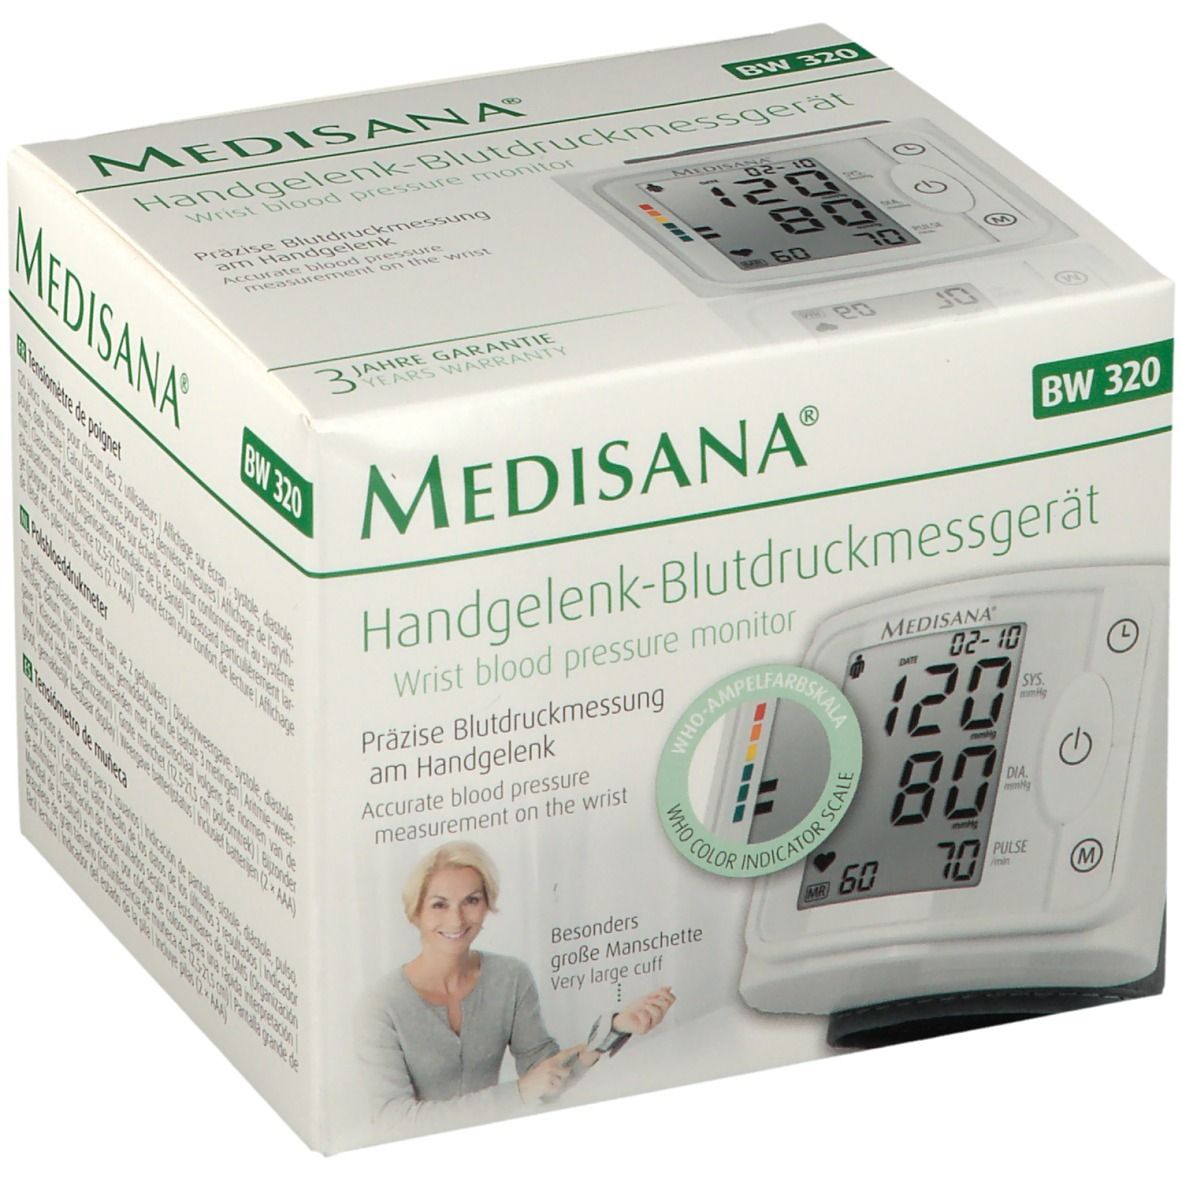 Handgelenk-Blutdruckmessgerät 320 - Apotheke Medisana BW Redcare 1 St